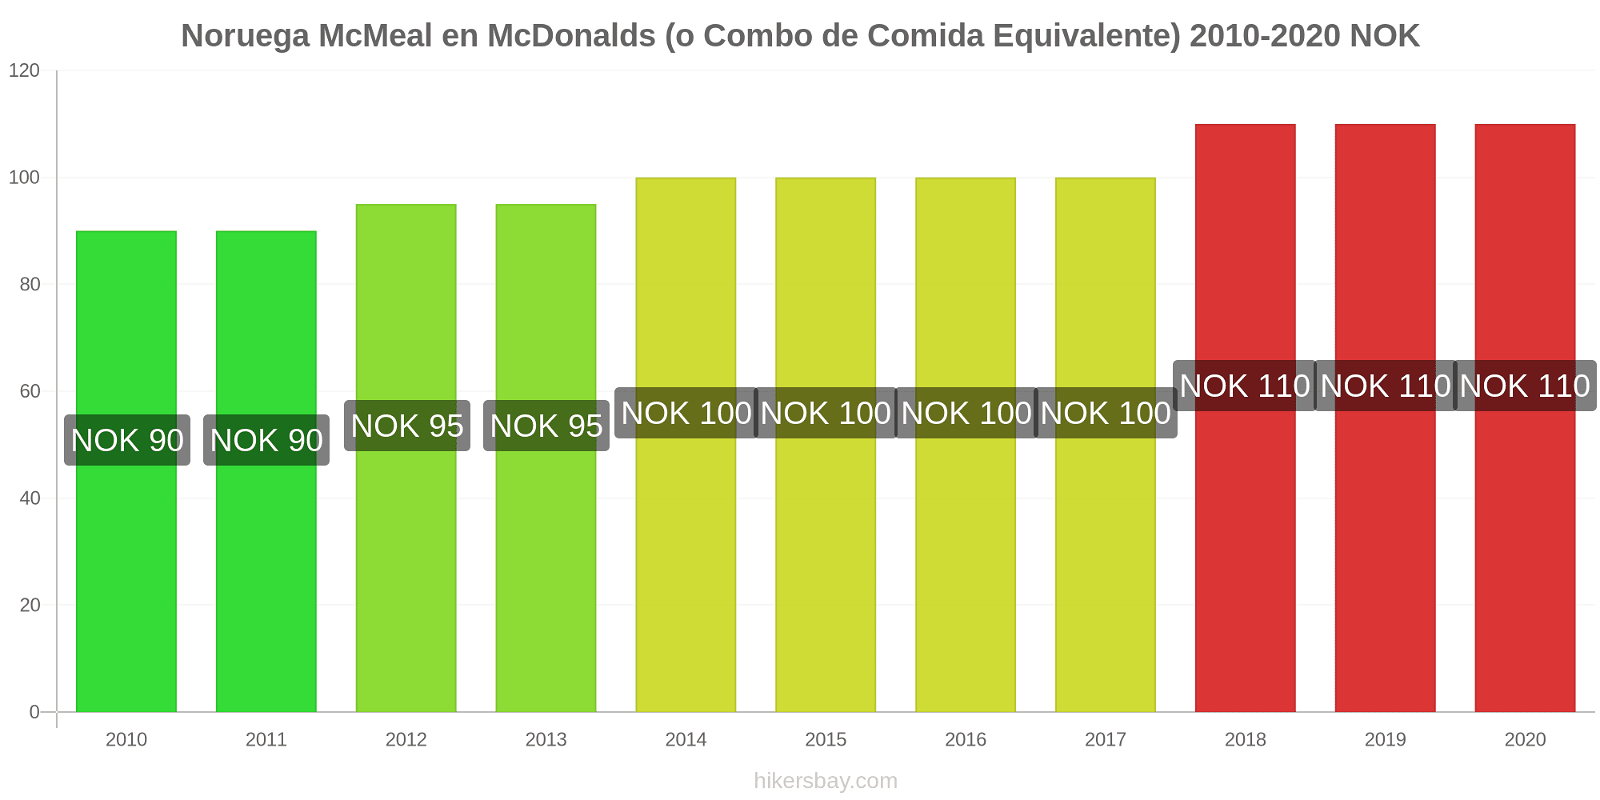 Noruega cambios de precios McMeal en McDonalds (o menú equivalente) hikersbay.com